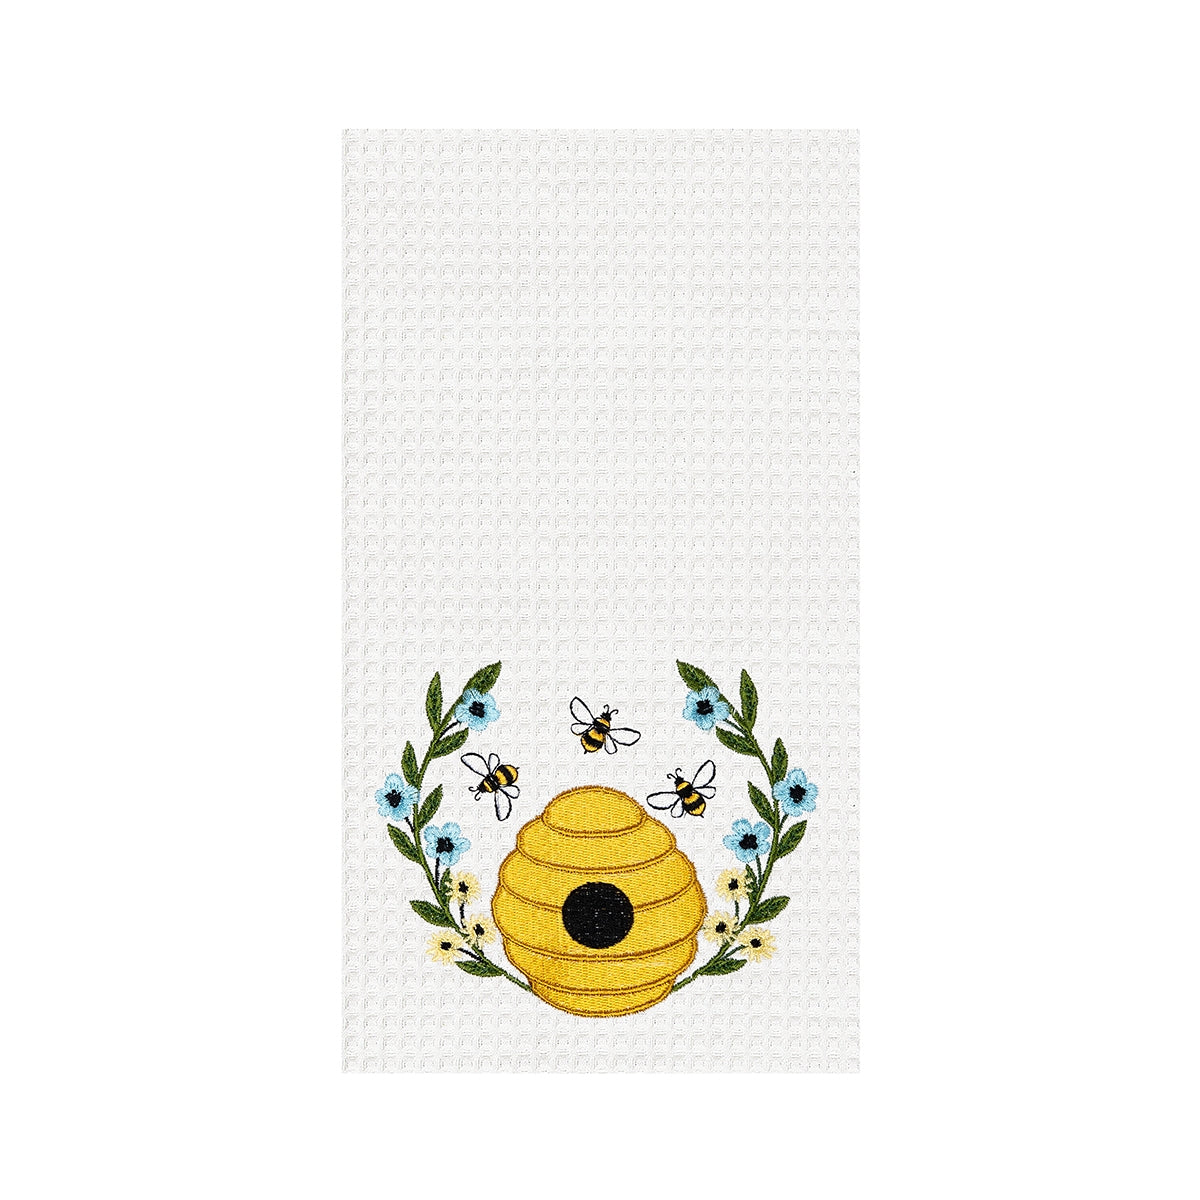 Bee Hive Wreath Towel - Findlay Rowe Designs